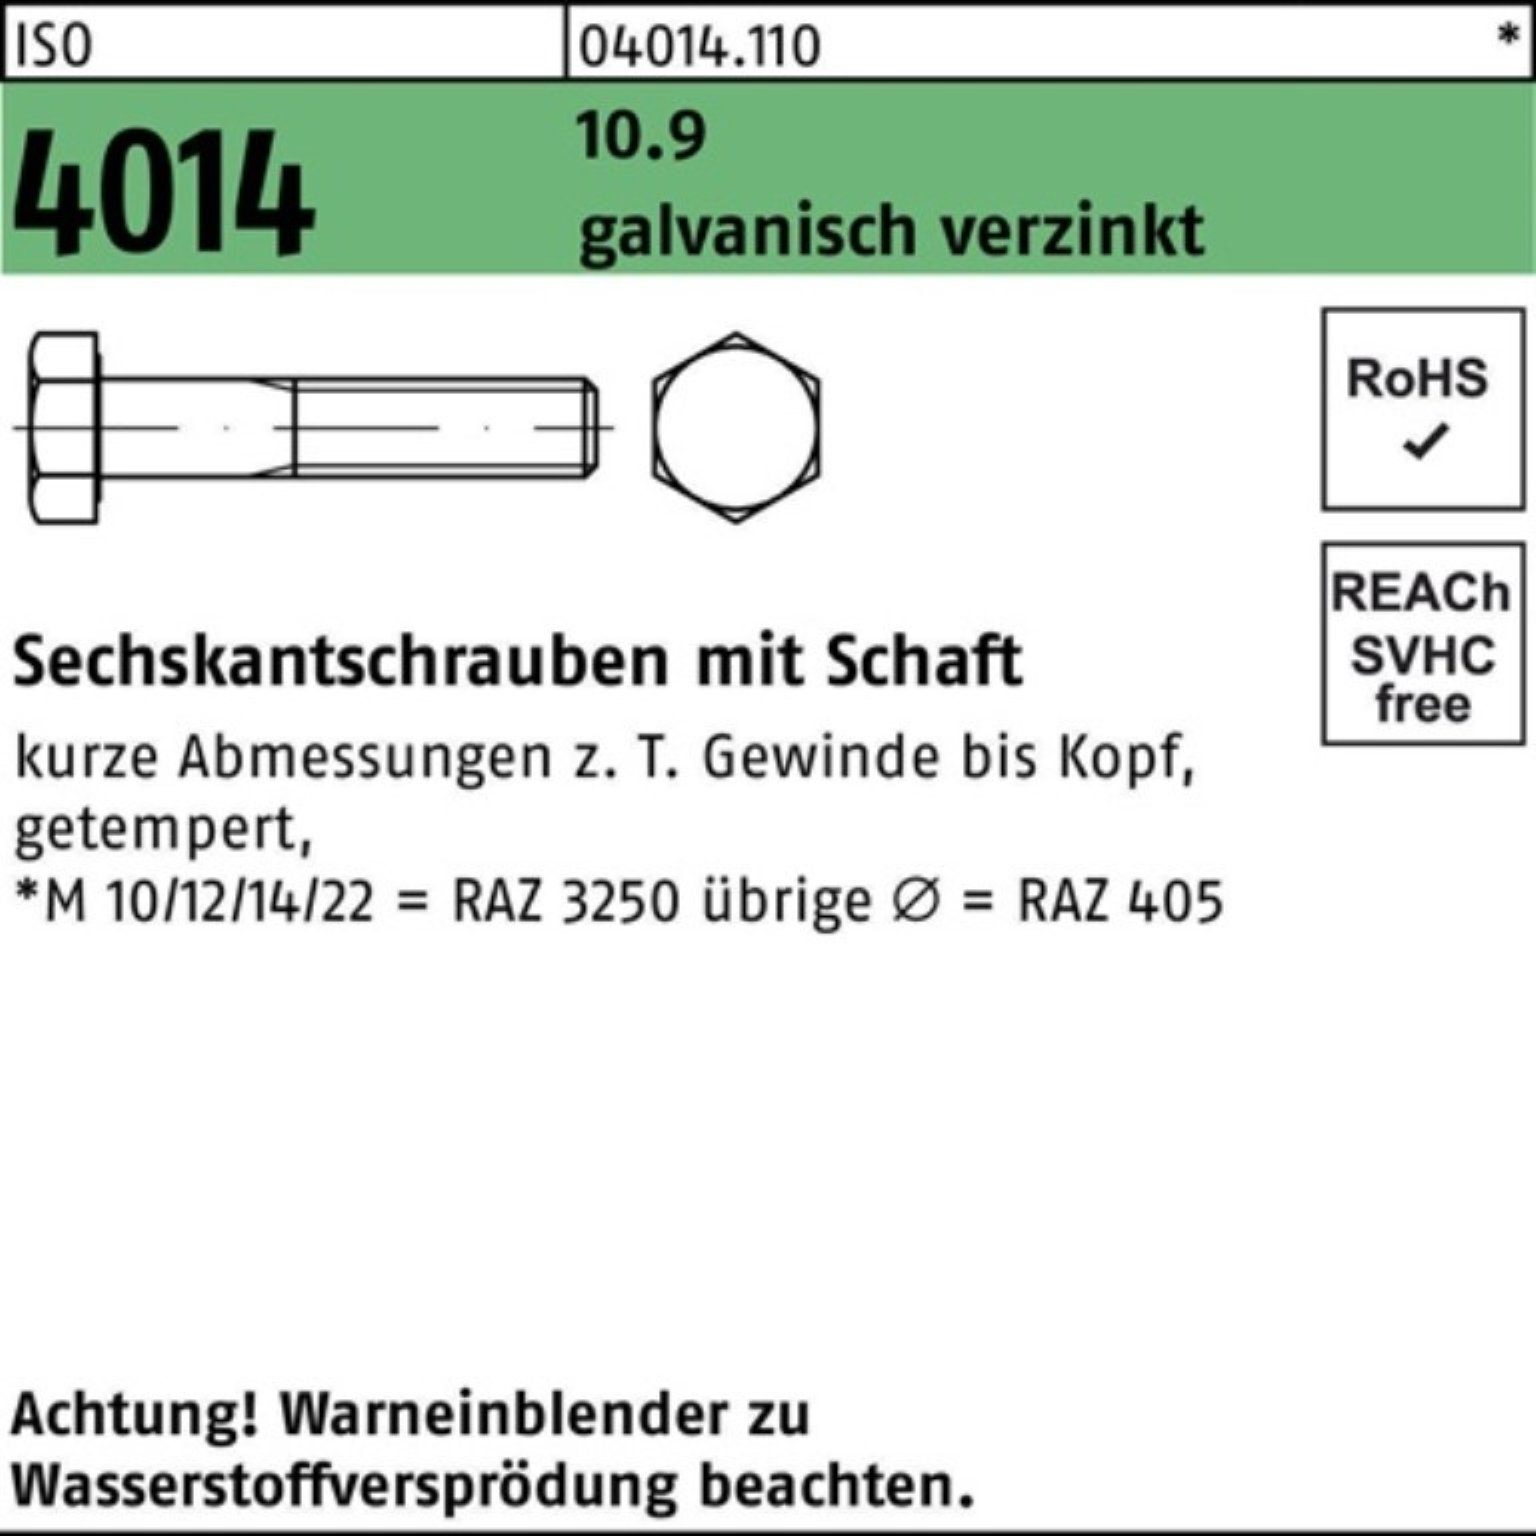 Bufab Sechskantschraube 2 Schaft 80 10.9 Pack 4014 100er M24x ISO Sechskantschraube galv.verz